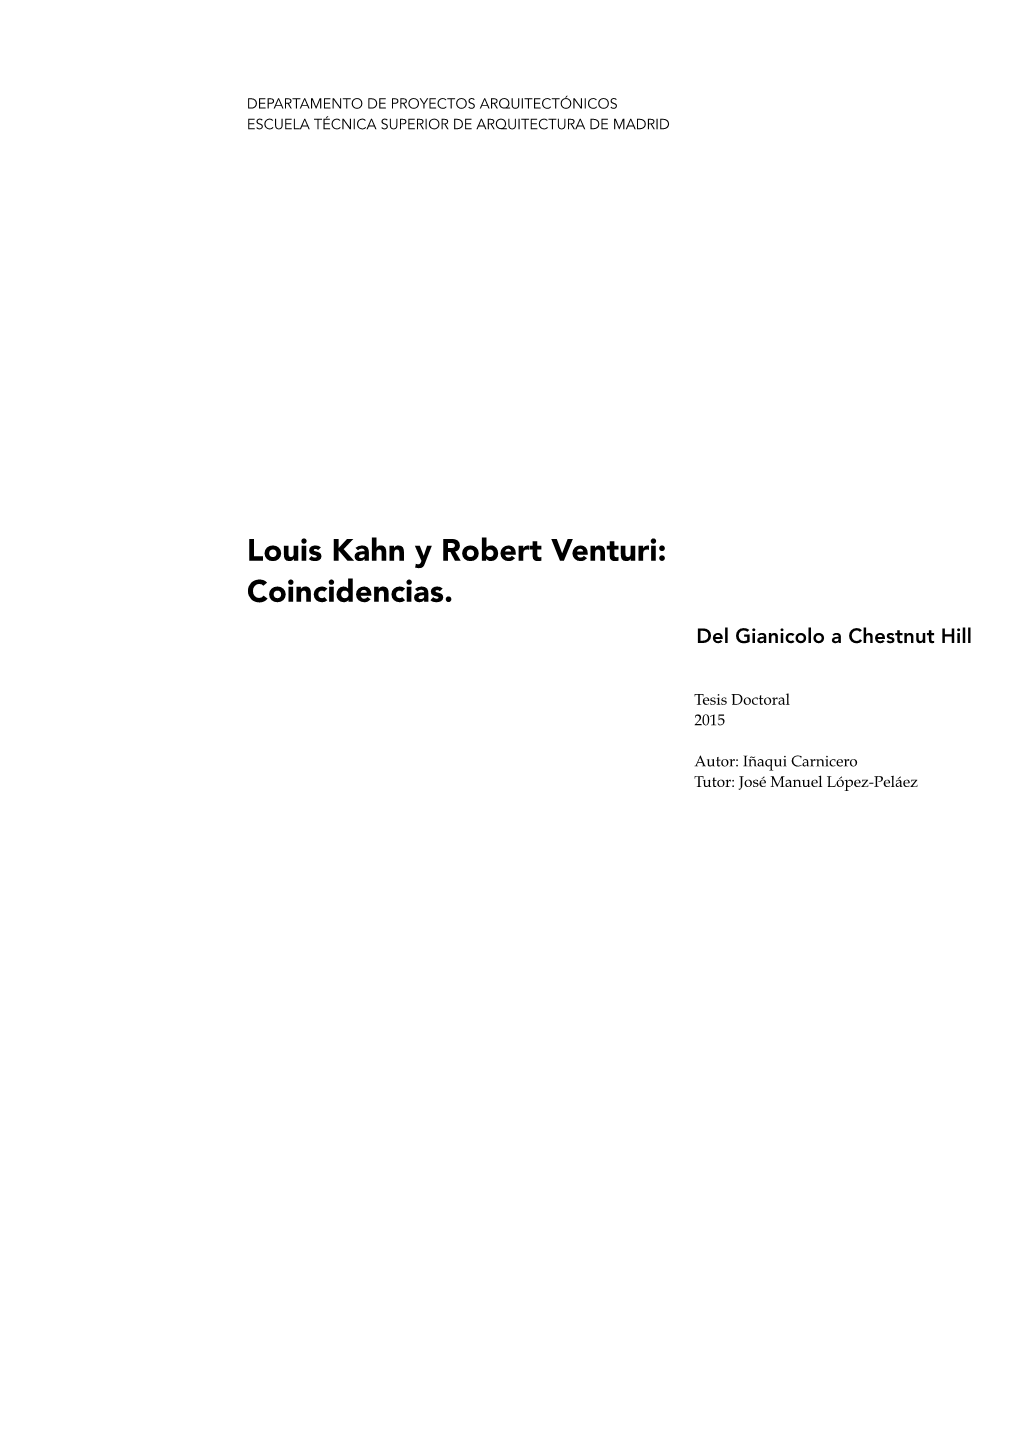 Louis Kahn Y Robert Venturi: Coincidencias